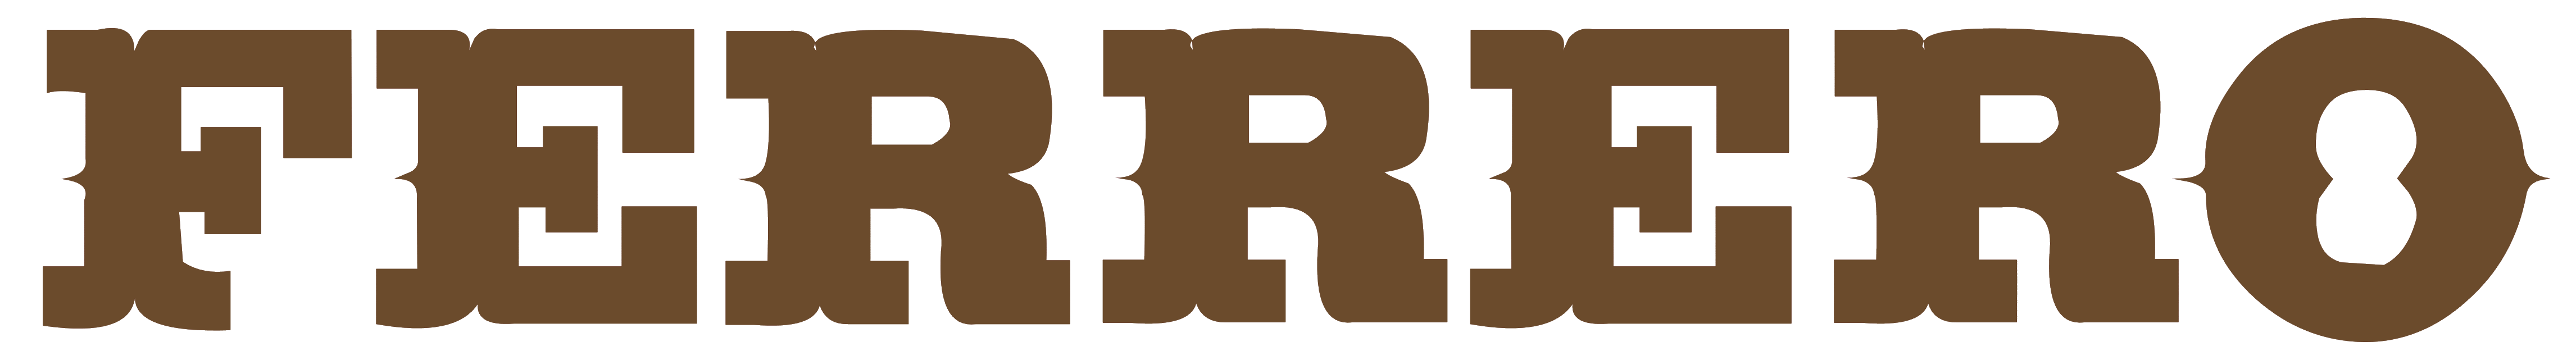 Ferrero_logo